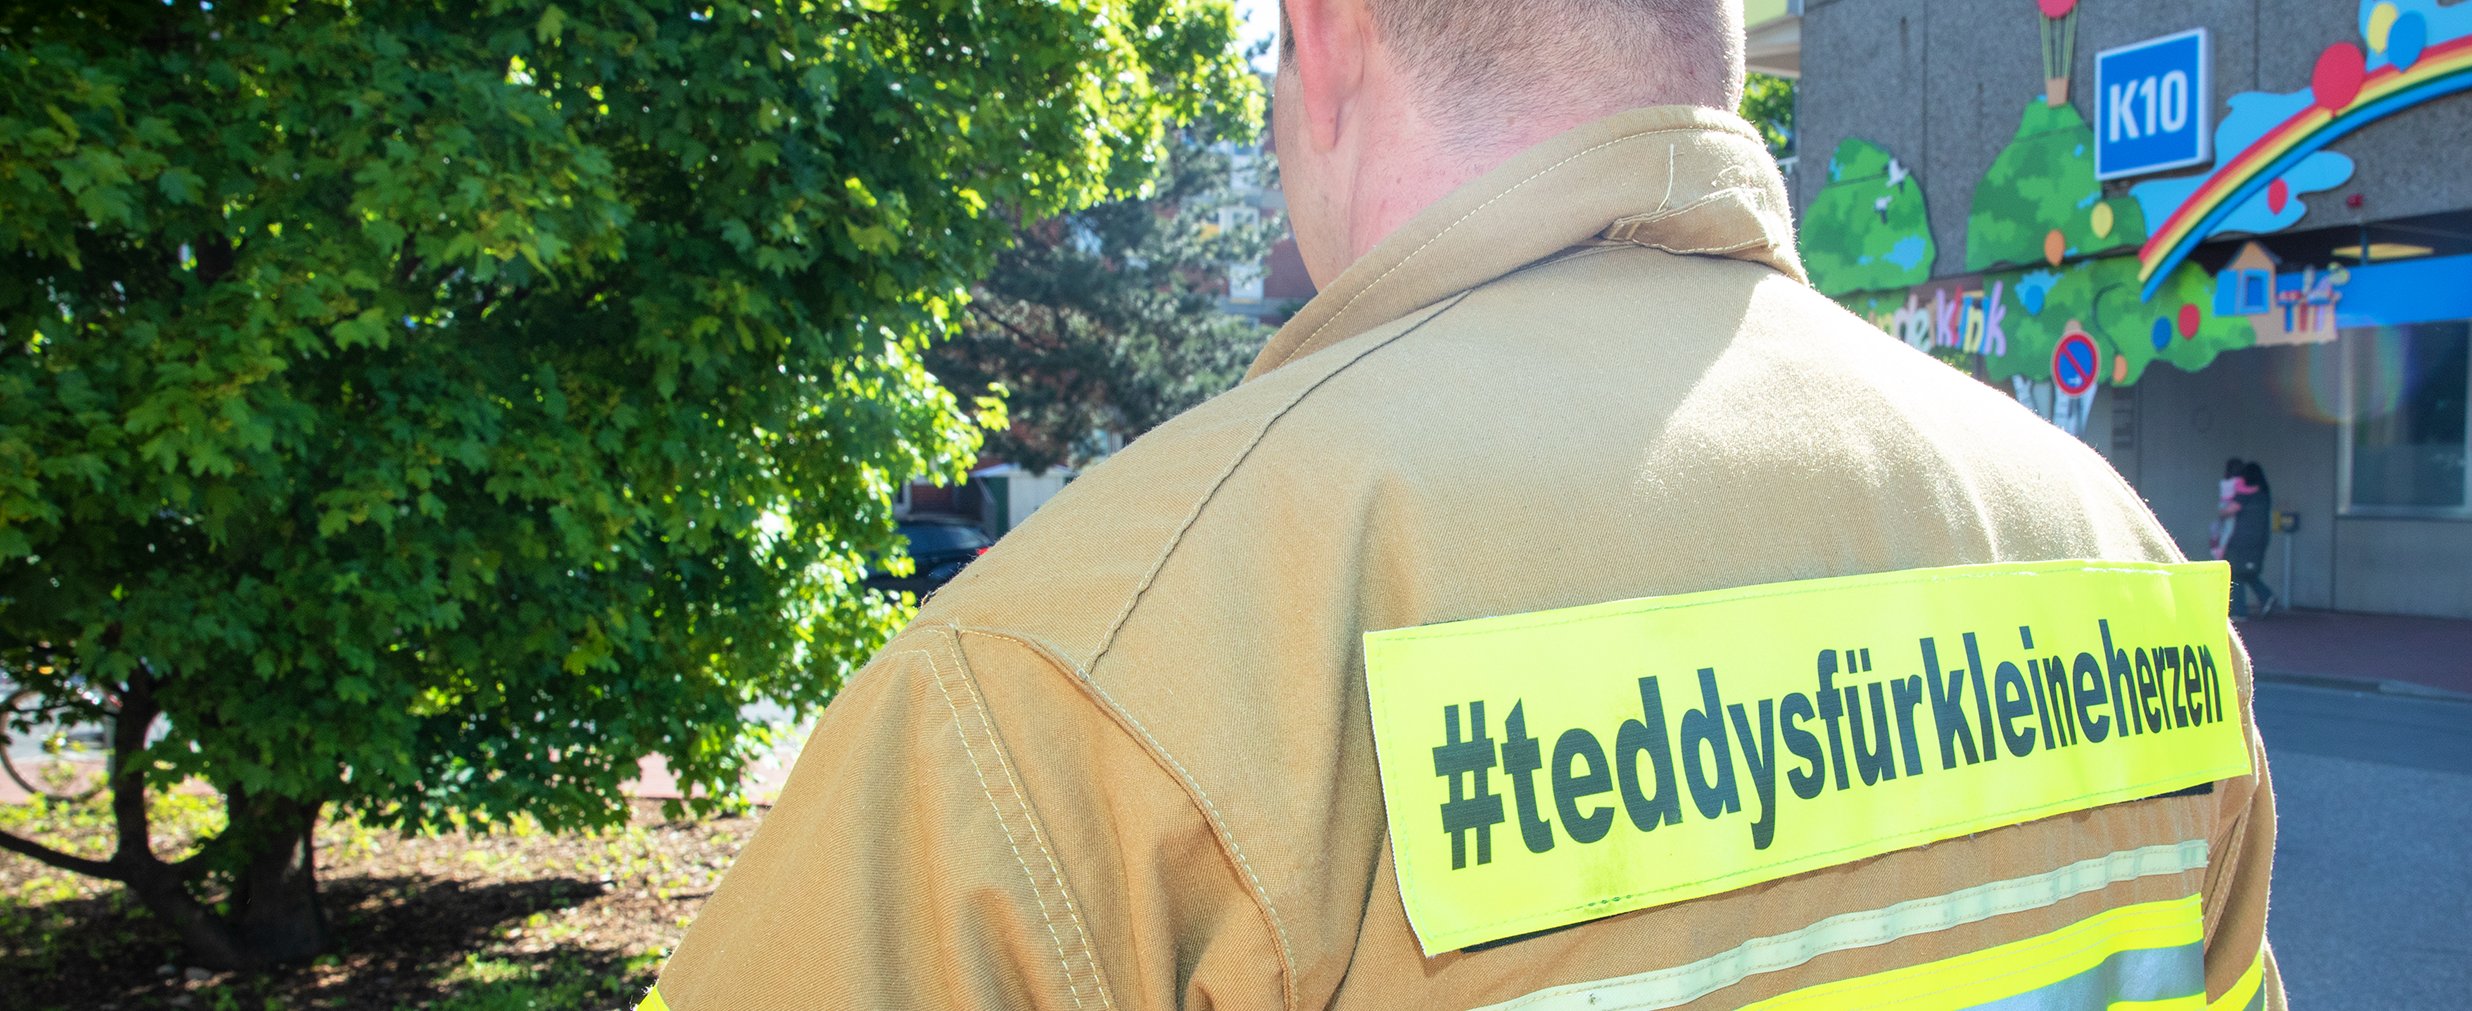 Feuerwehrmann von hinten mit der Aufschrift auf der Jacke "#teddysfürkleineherzen"